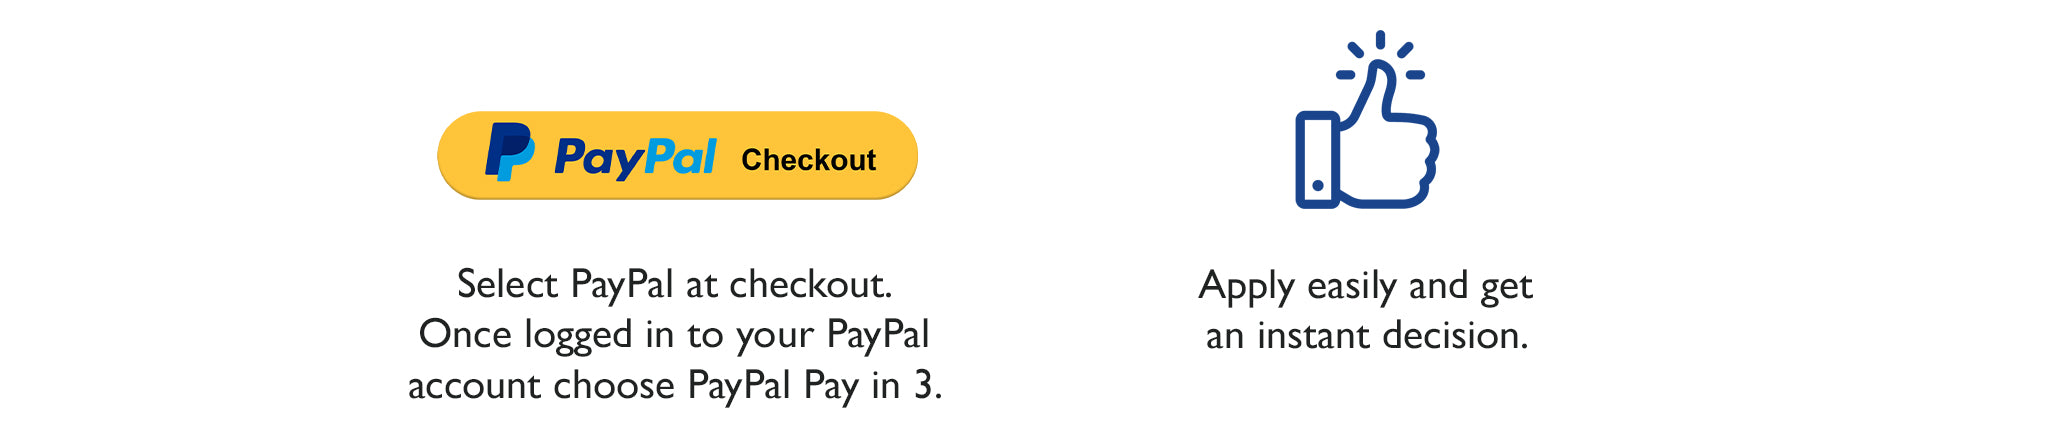 Select PayPal at checkout